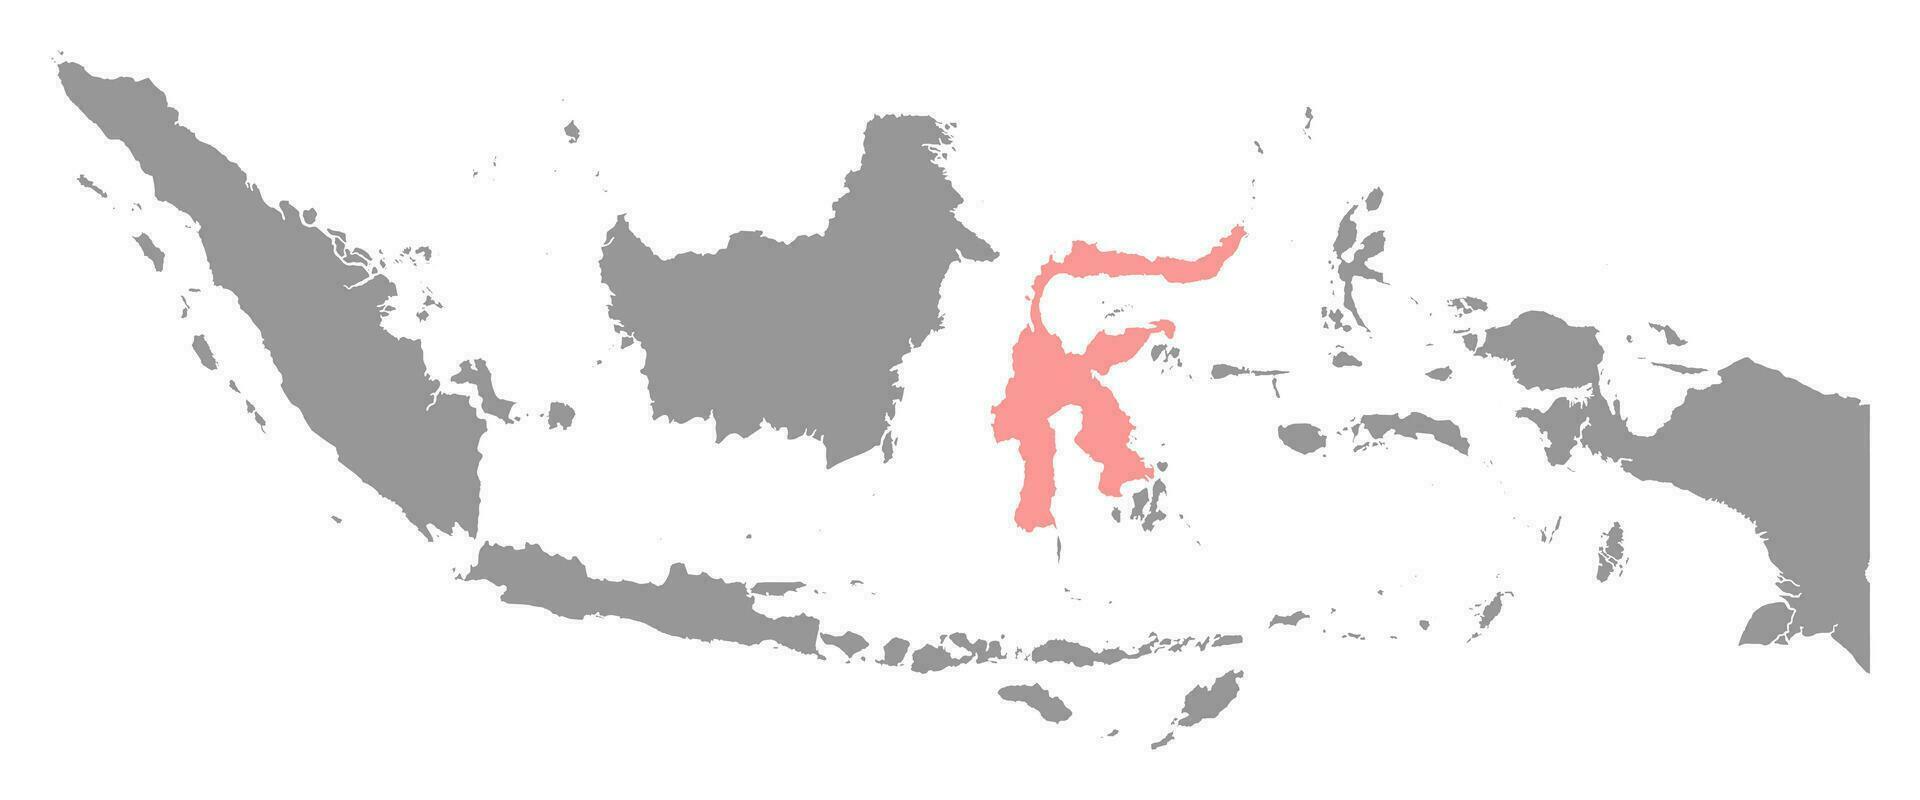 sulawesi isla mapa, región de Indonesia. vector ilustración.